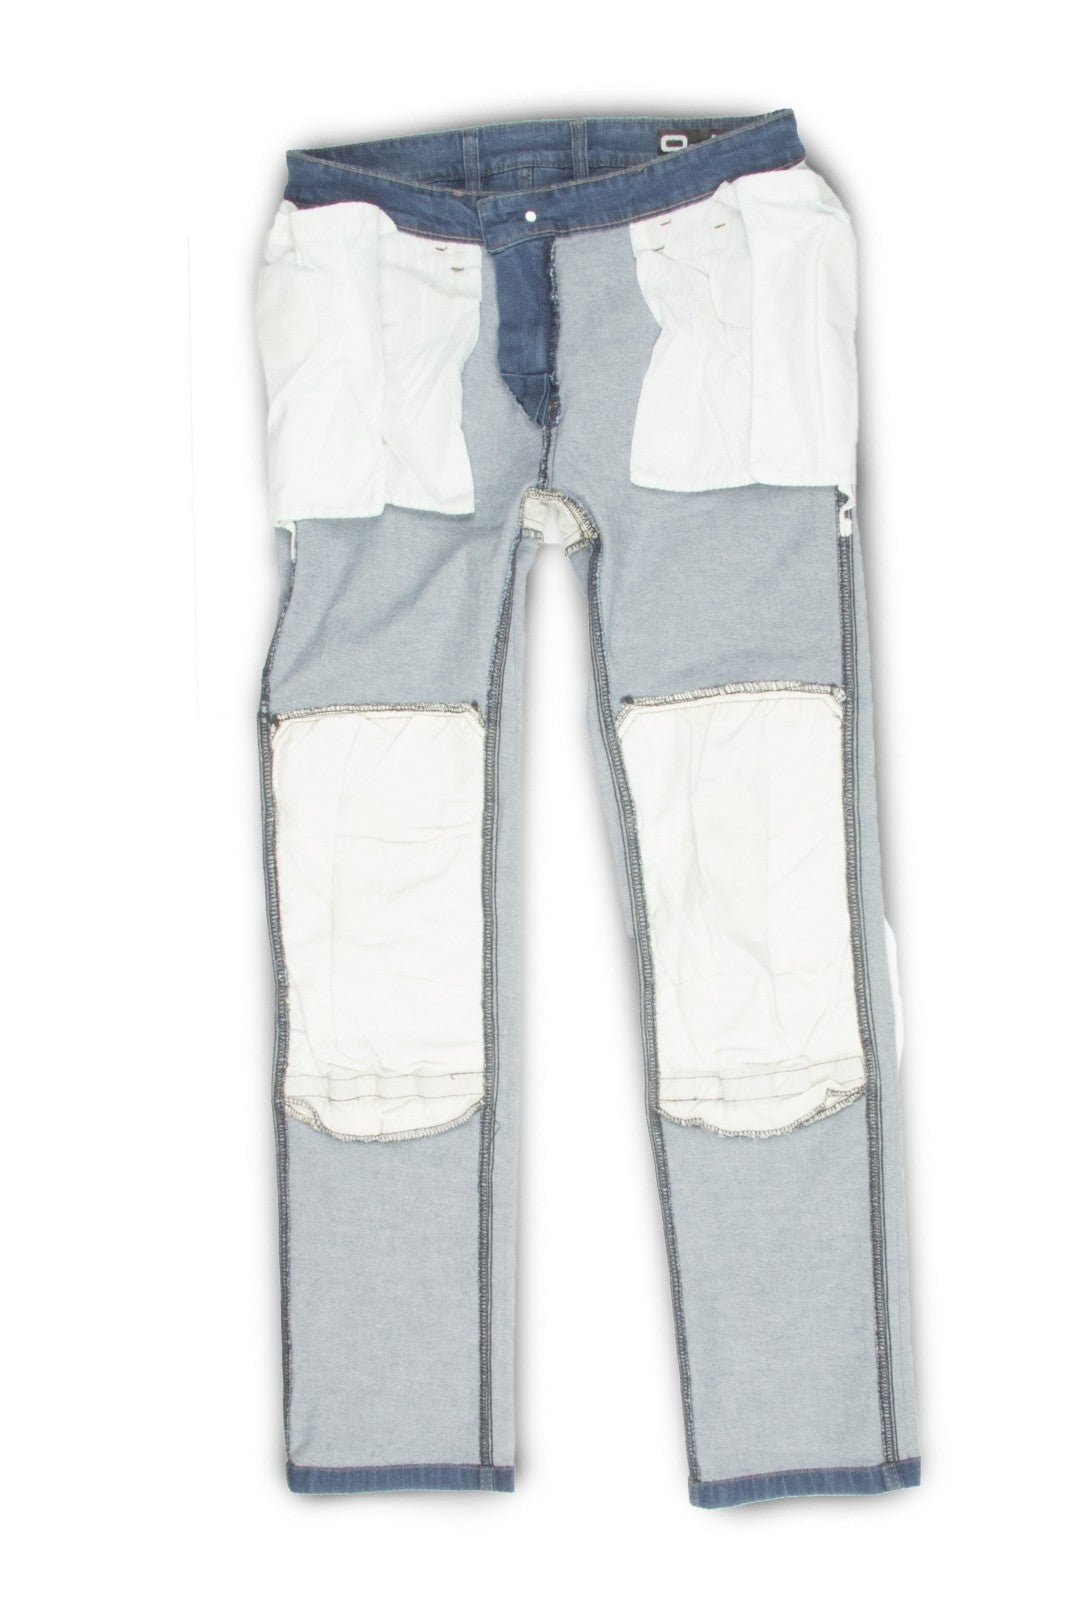 Jeans moto OJ EXPERIENCE MAN uomo 4 stagioni elasticizzato, aramide, protezioni rimovibili - OnTheRoad.shop - OJ